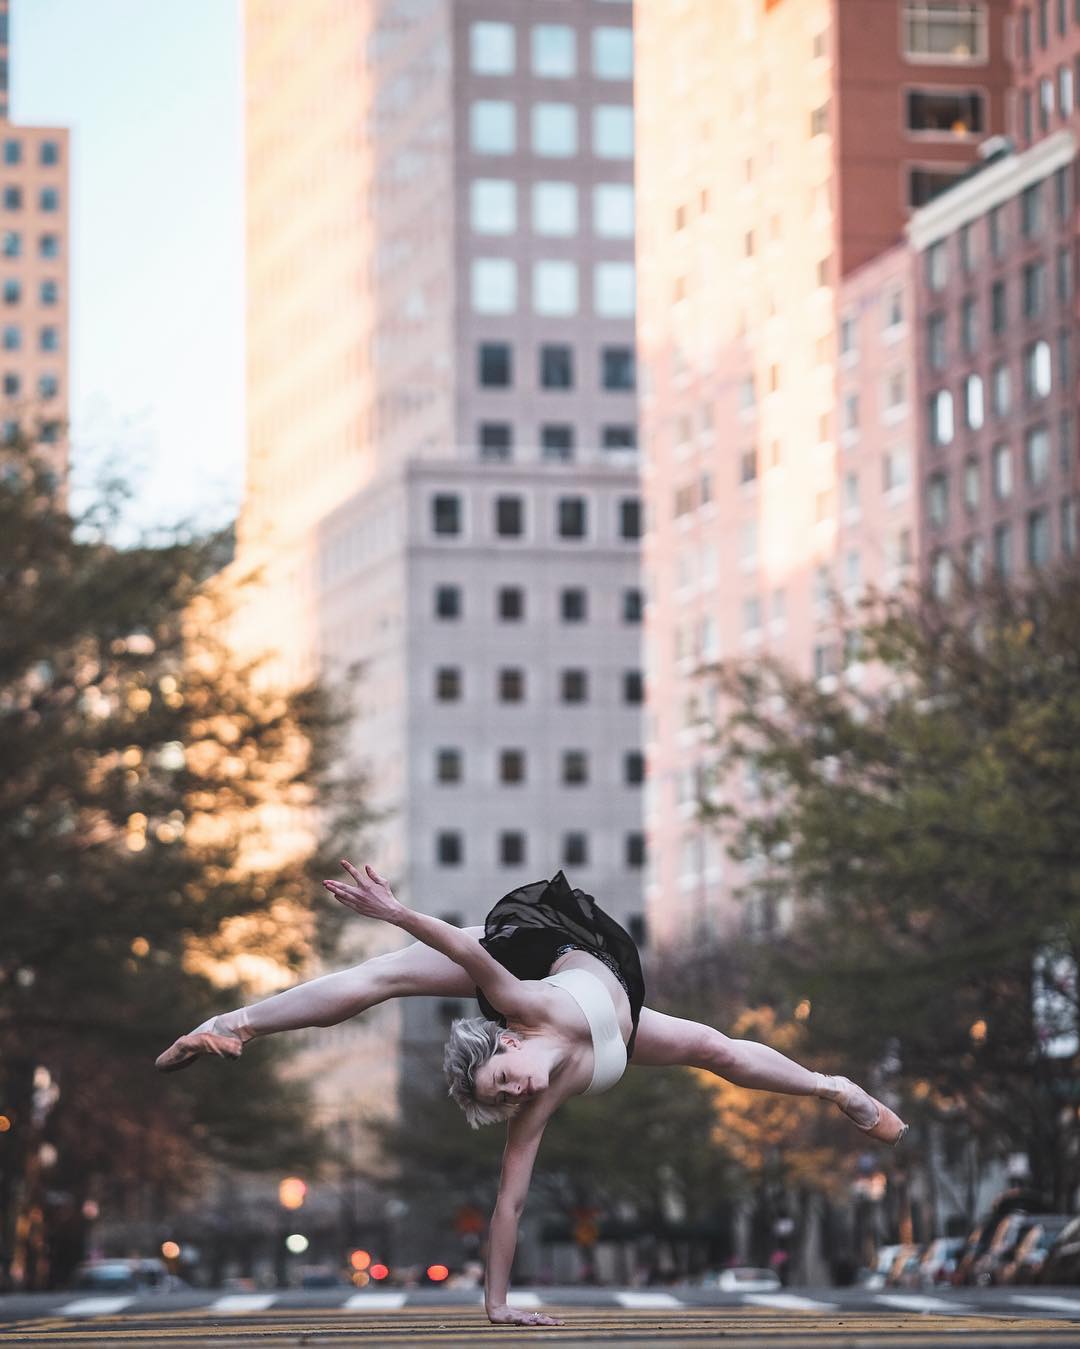 omarzrobles 12531050 1533755623595224 1567521929 n 2 - Dançarinos de balé praticam seus movimentos nas ruas para foto